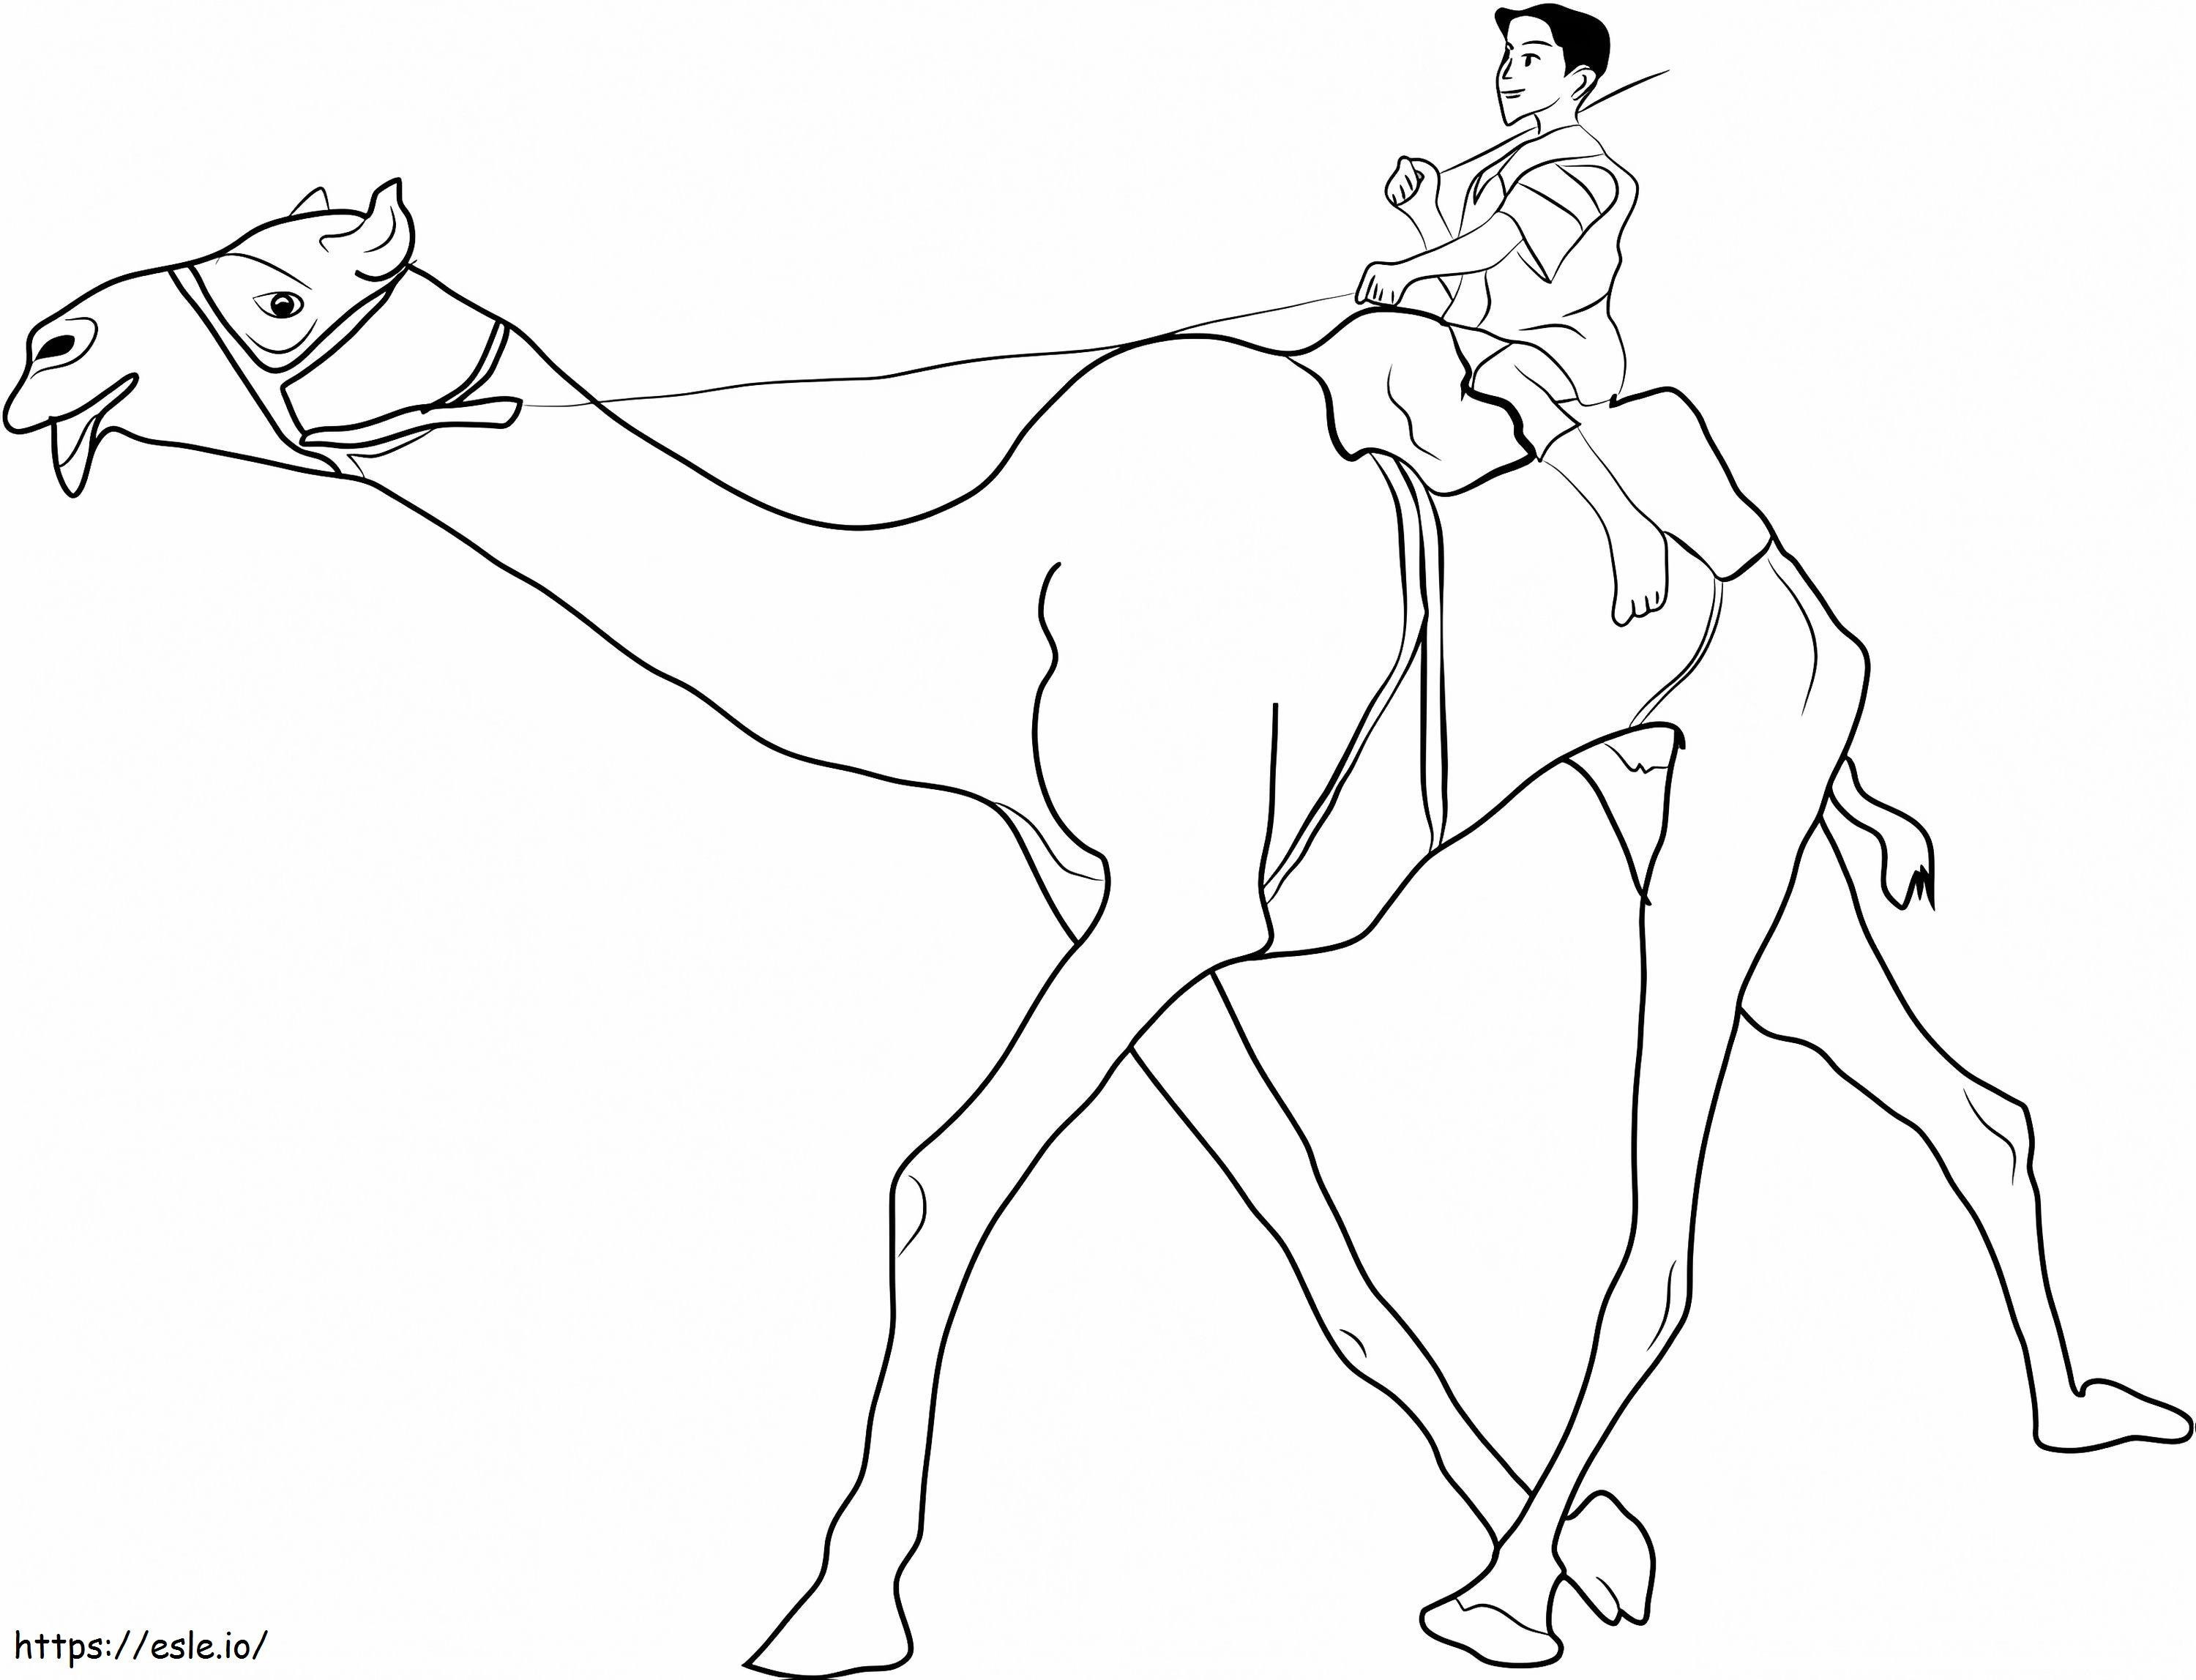  Homem Montando Camelo A4 para colorir